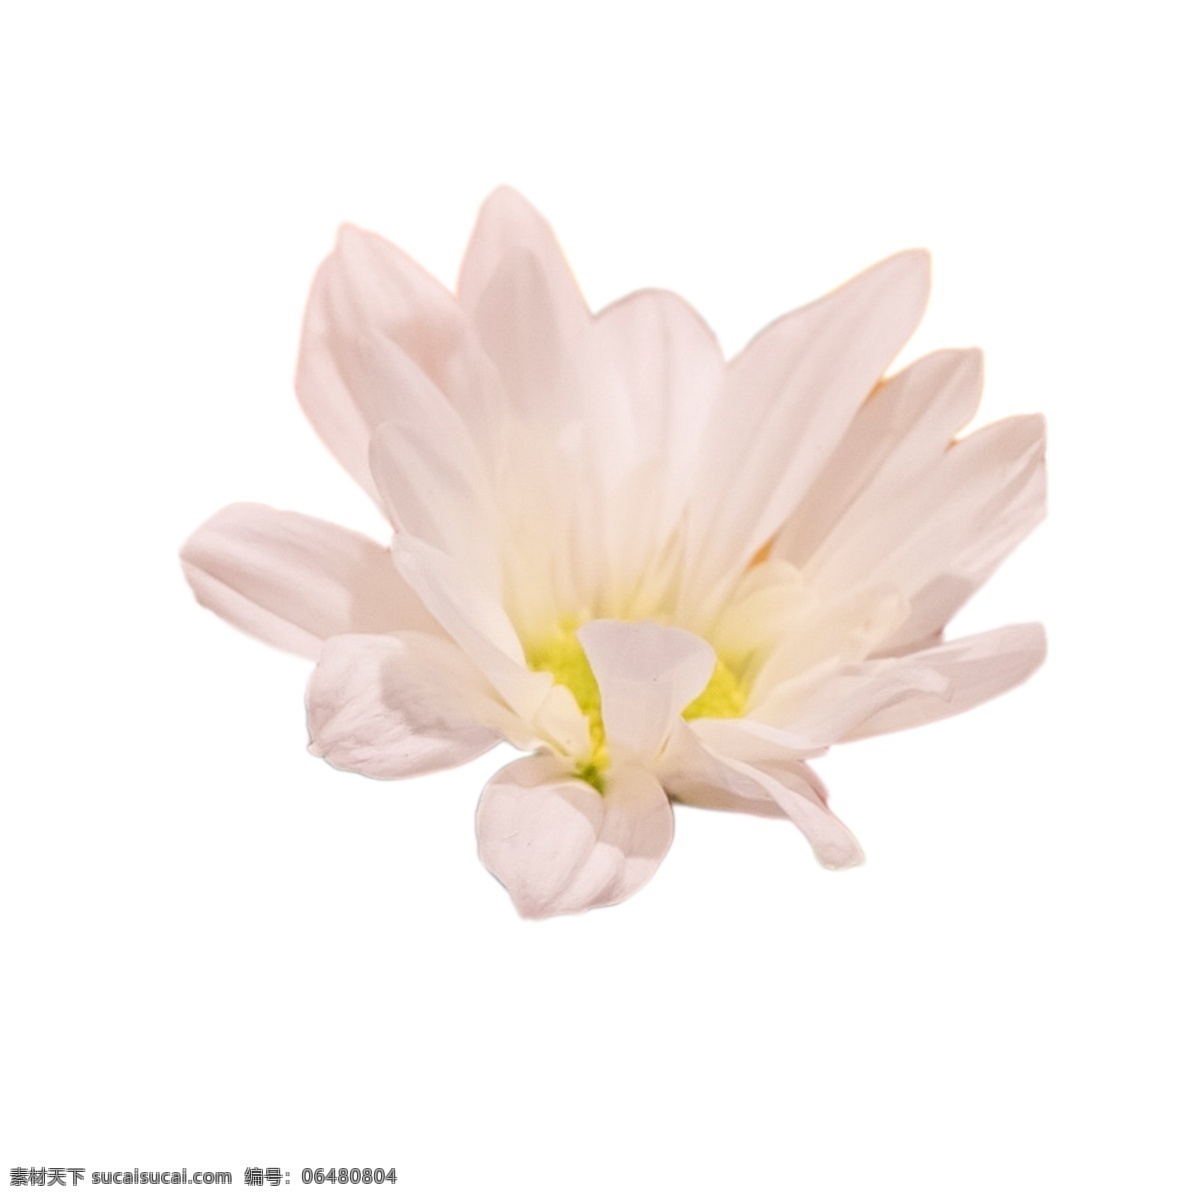 白色 美丽 花朵 美丽花朵 春天鲜花 盛开的鲜花 卡通插图 创意卡通下载 插图 png图下载